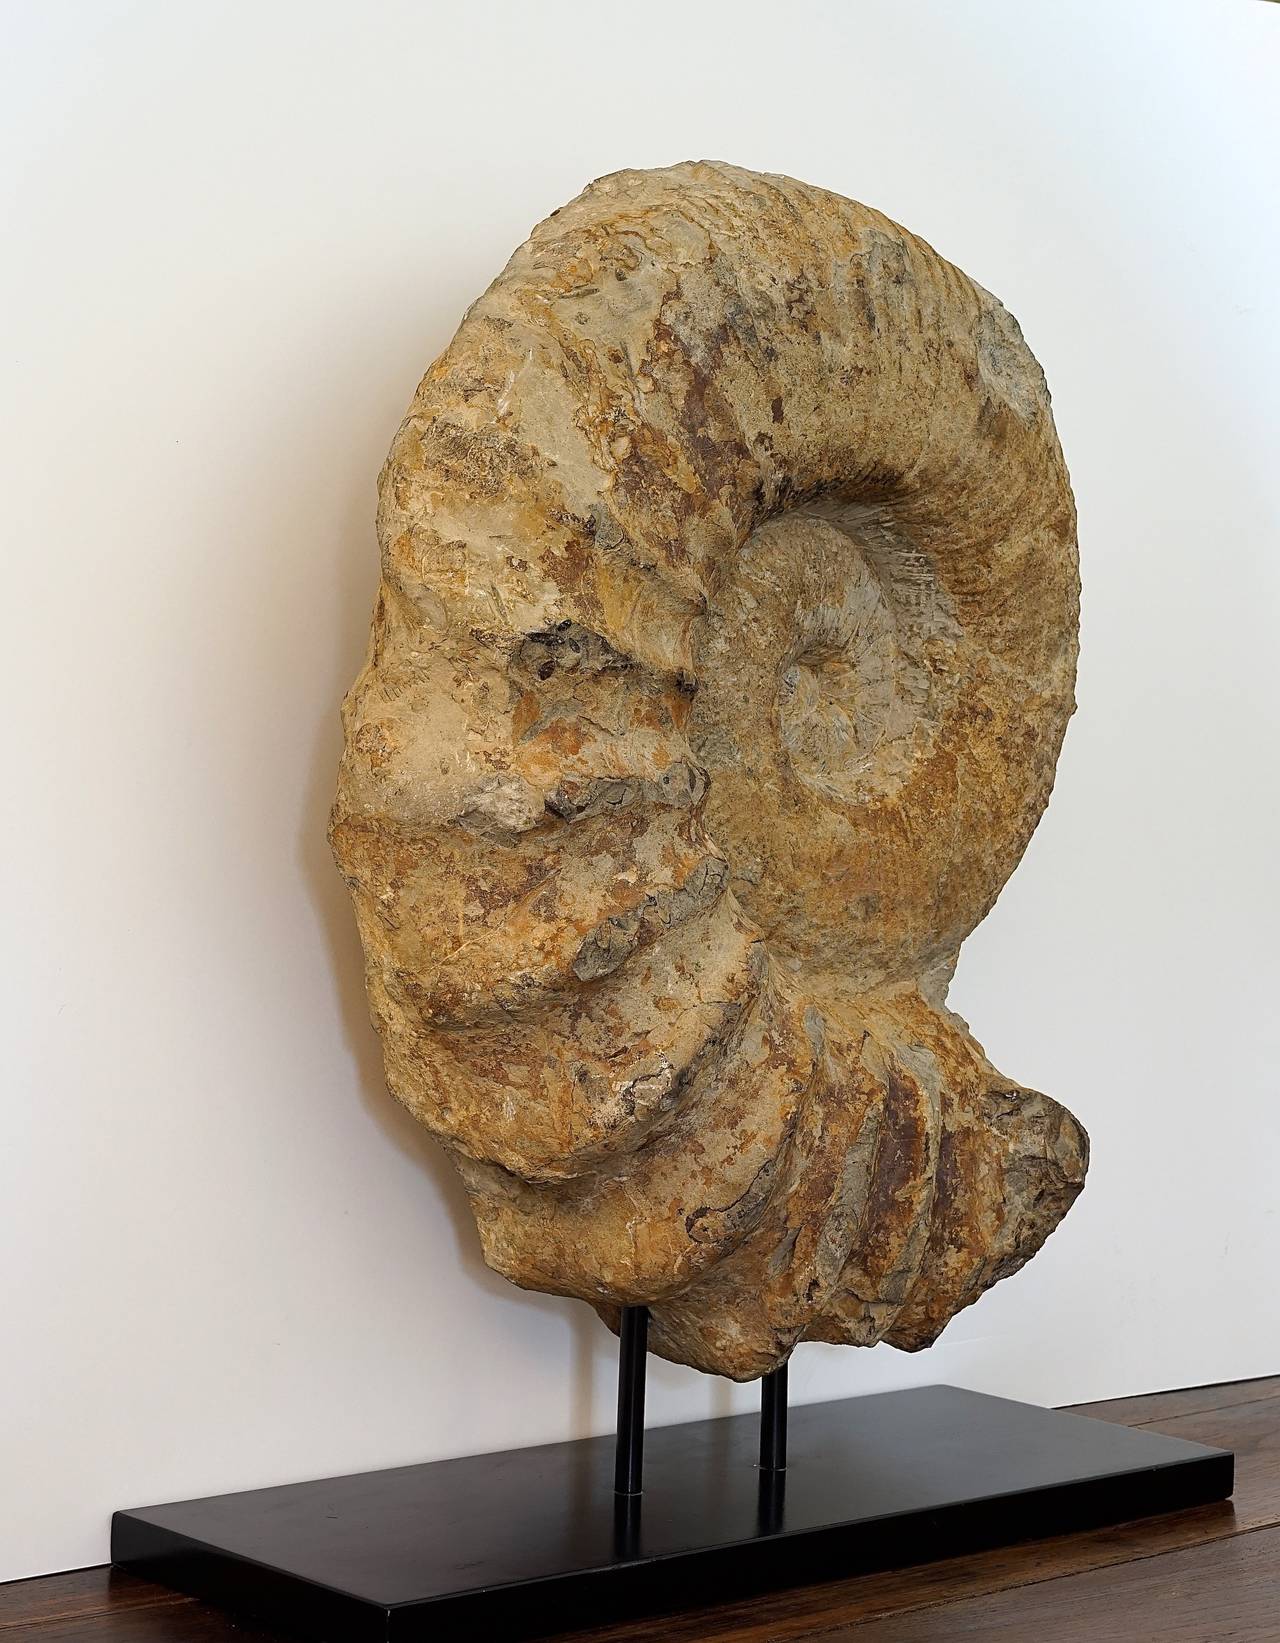 parapuzosia ammonite